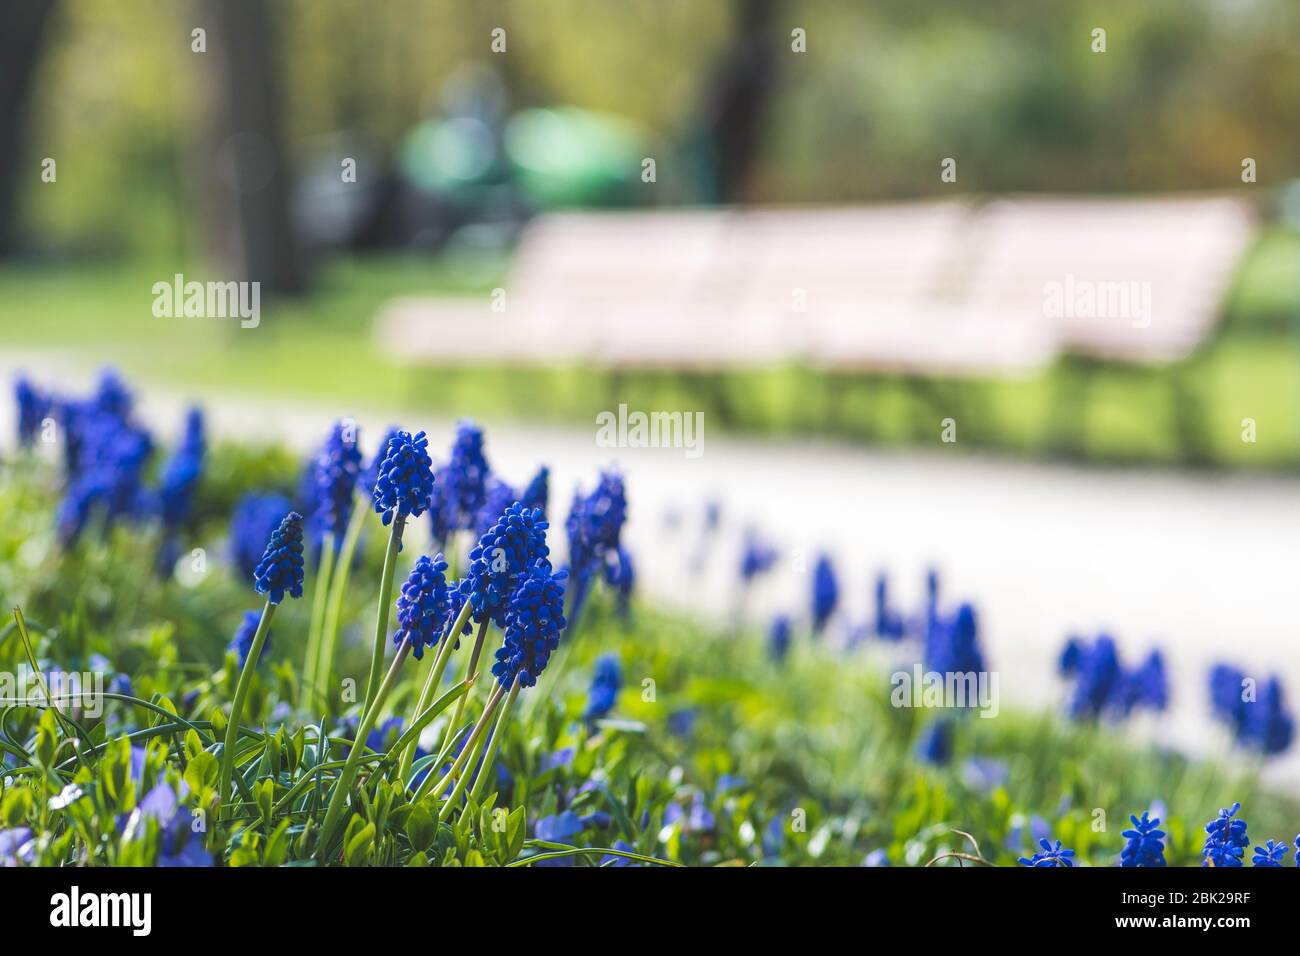 Belles fleurs bleues, jacinthe de raisin ou cloches à bleuets, fleur de muscari au printemps, plantes vivaces bulbeuses avec bancs en bois sur fond Banque D'Images